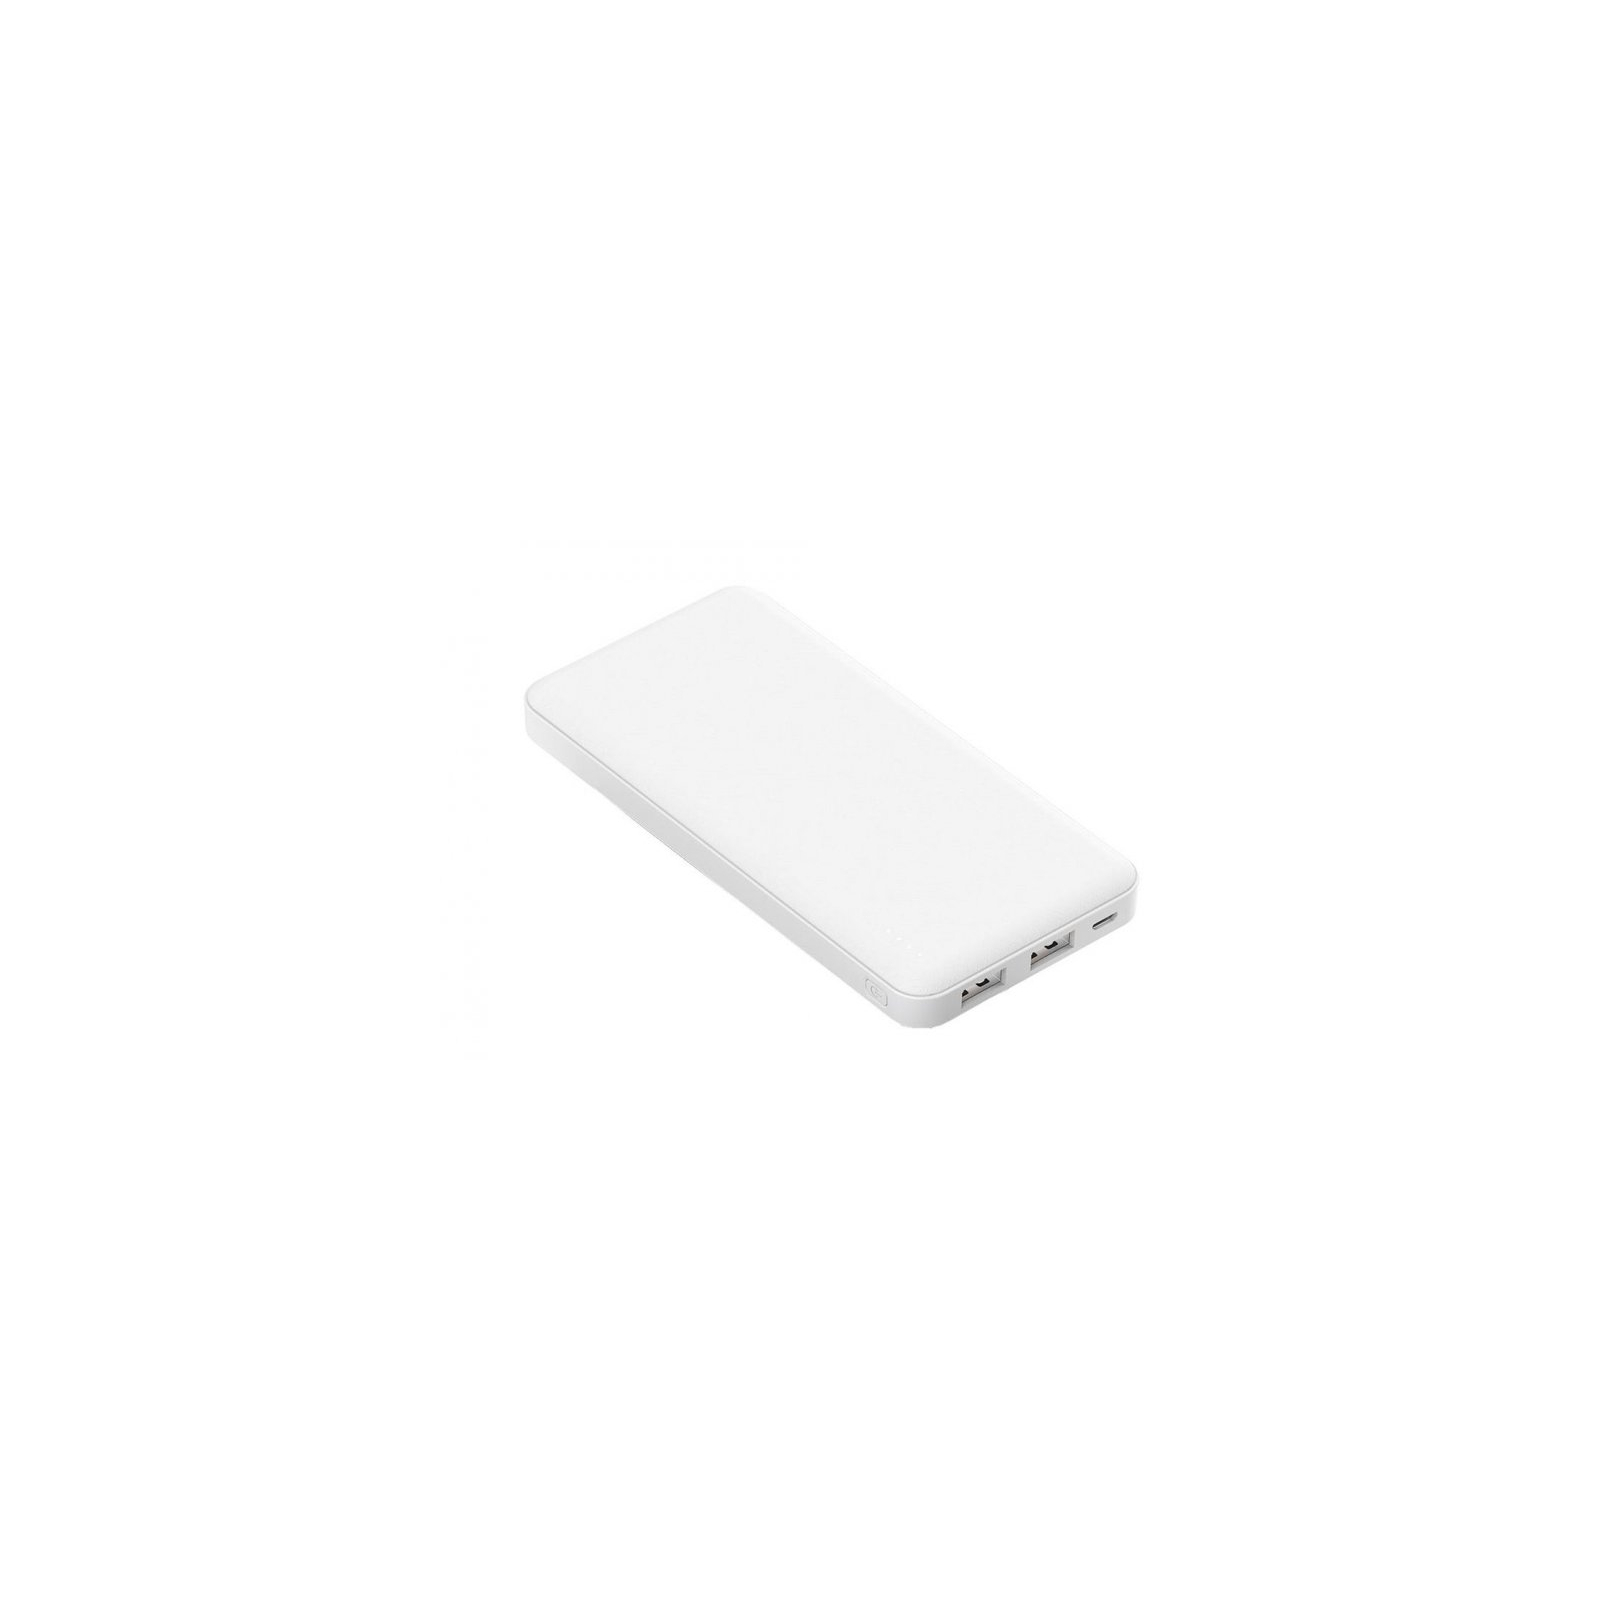 Батарея универсальная Blow 20000mAh, inp:Micro-USB(5V/2A), out:USB-A*2(5V/2,4A max), white (PB20C) изображение 3